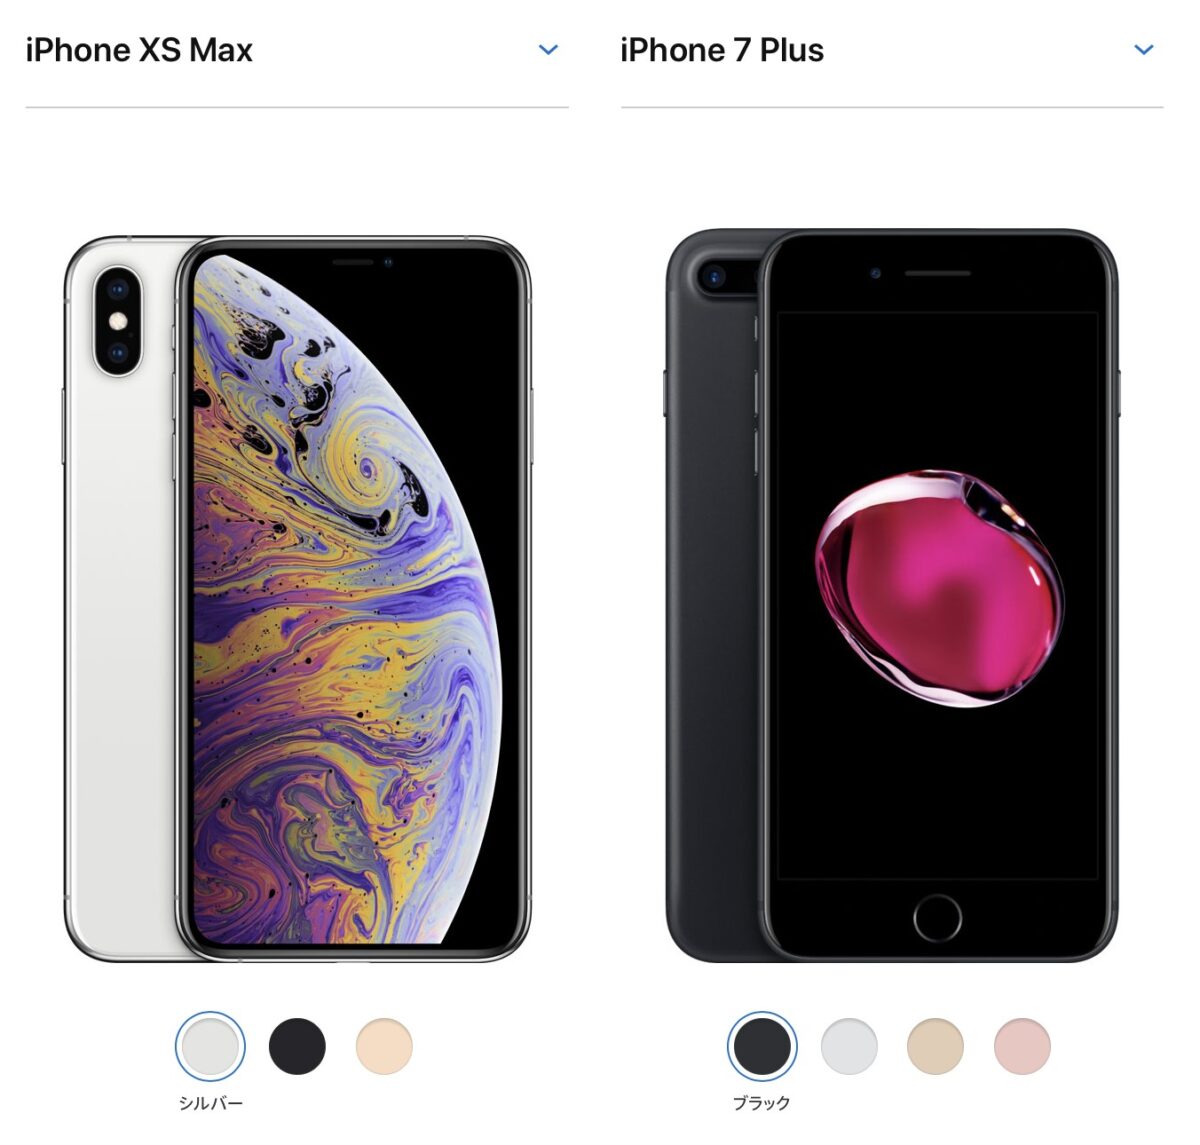 「iPhone XS/XS Max」が登場したが、iPhone 7 Plusを使い続けていこうと思った理由！